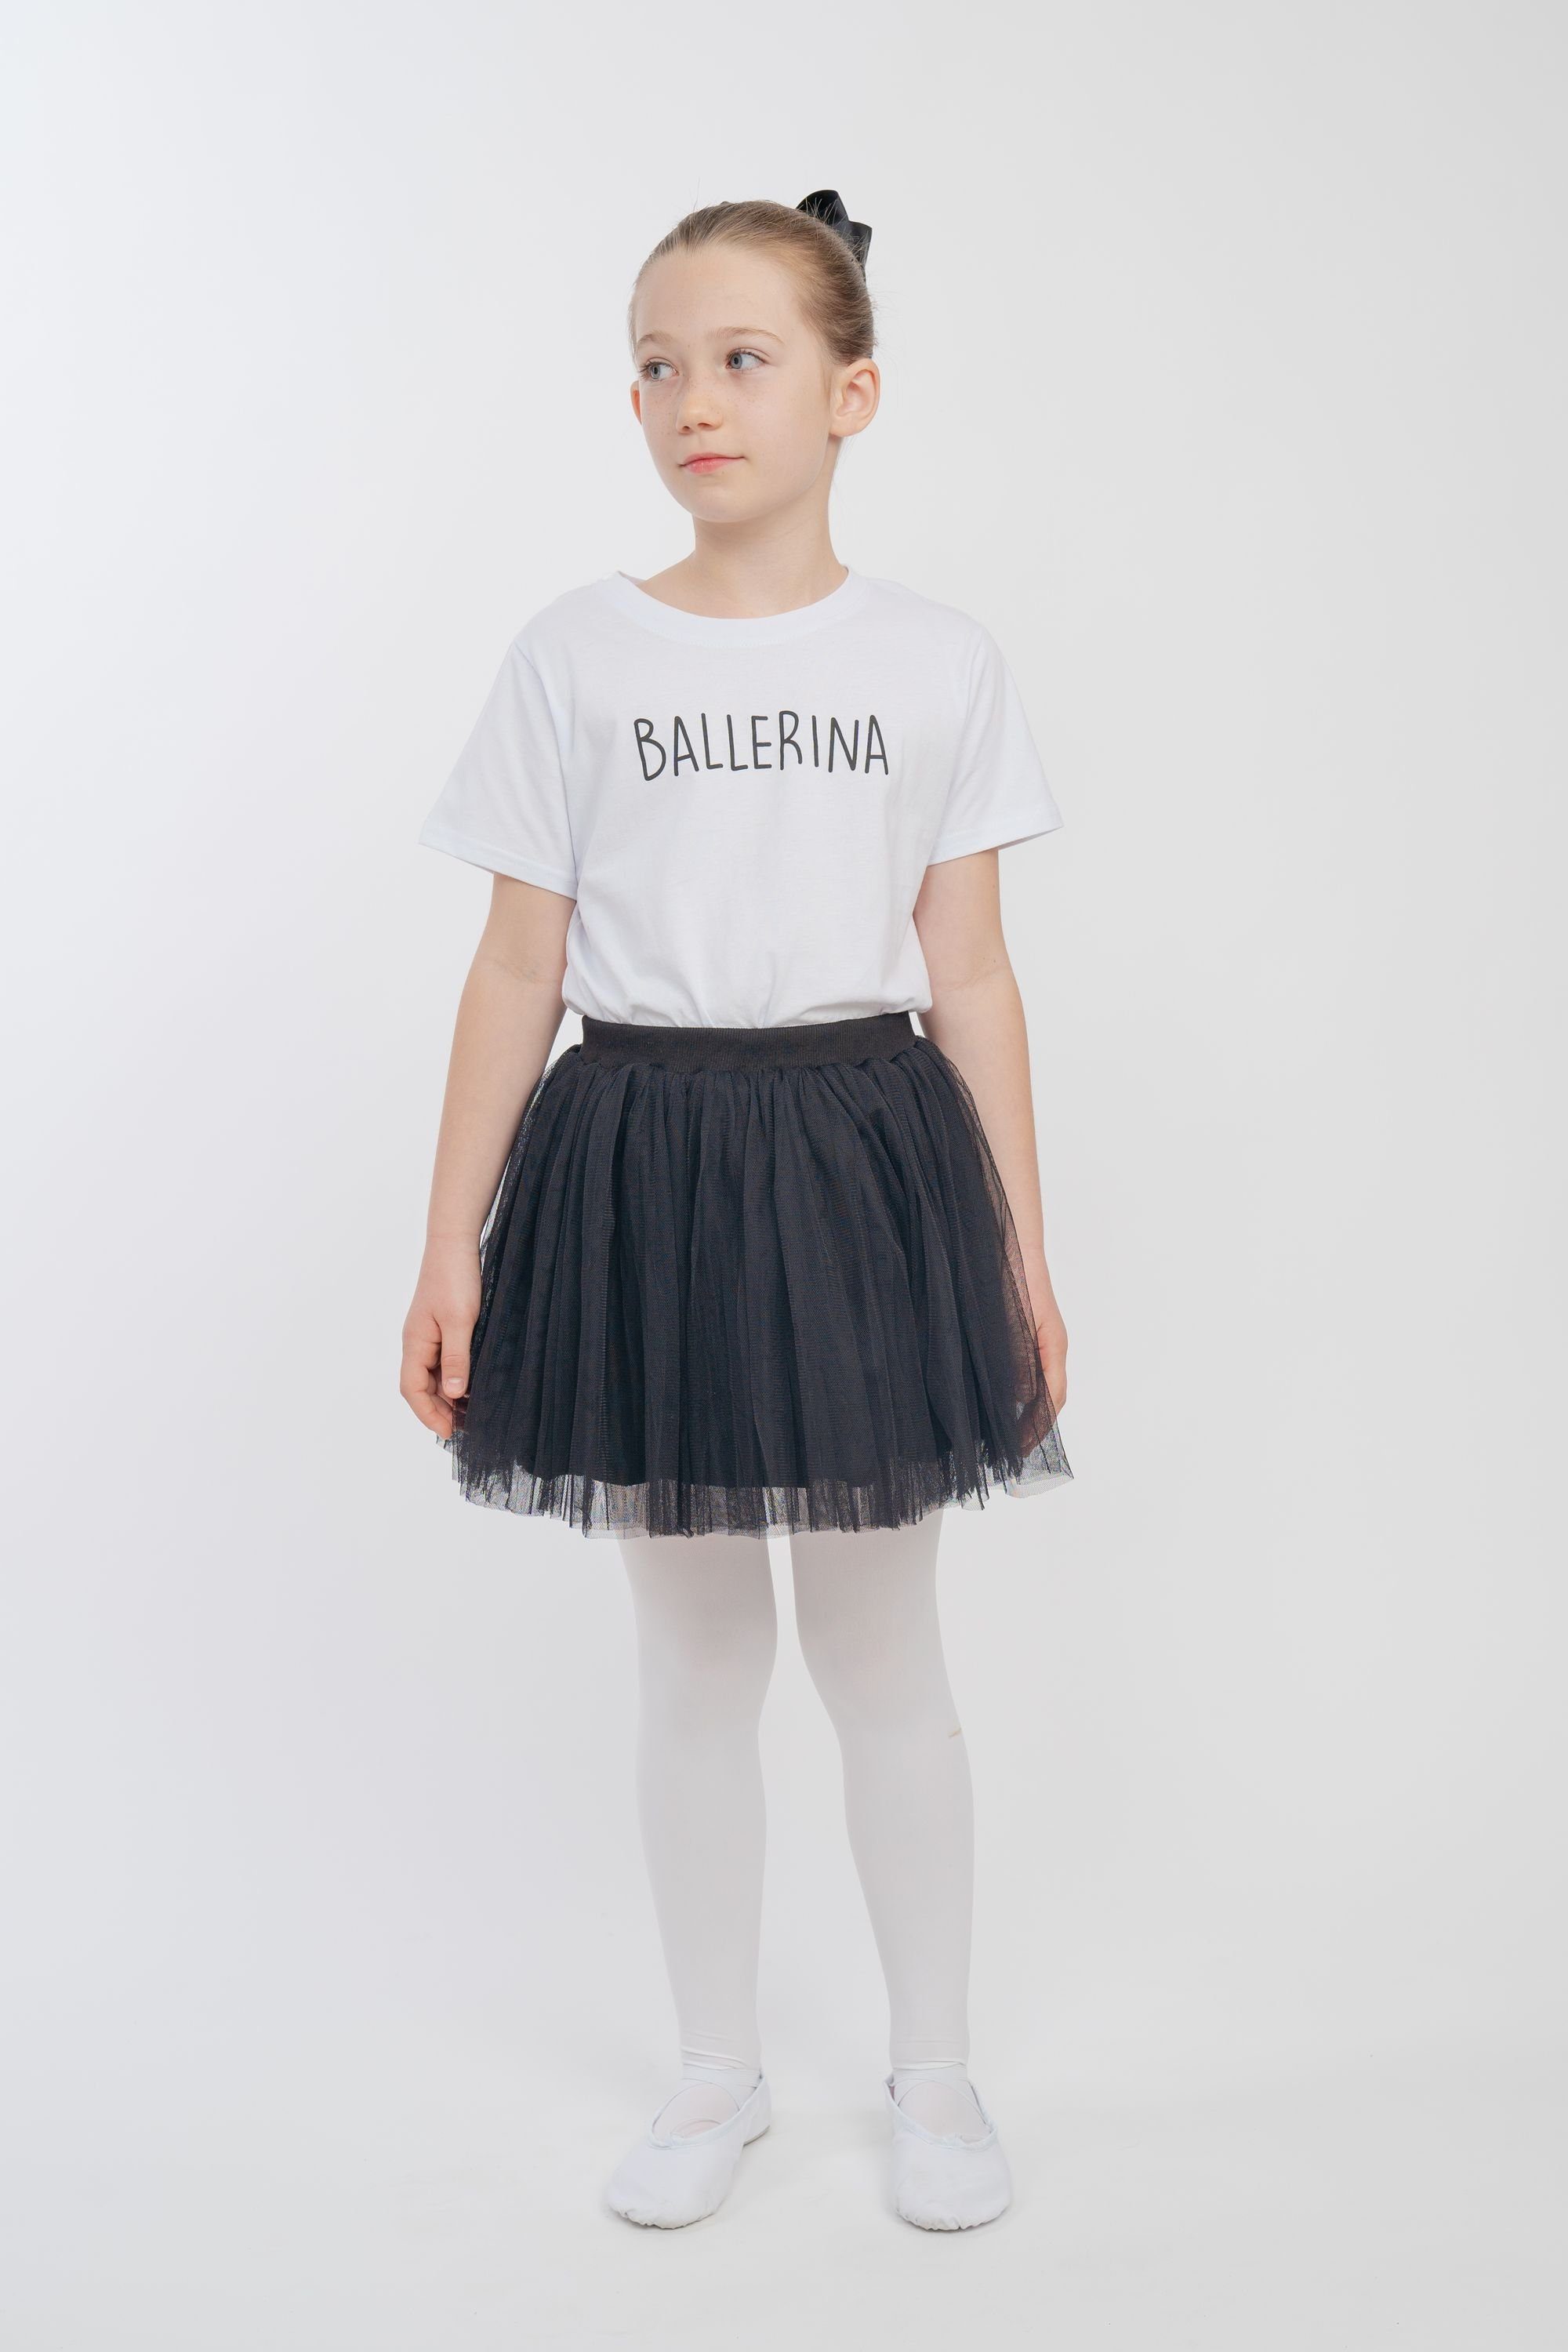 tanzmuster Tüllrock Tüllrock Little Ballerina weichem schwarz Tüll weich blickdichtem mit Unterrock aus besonders